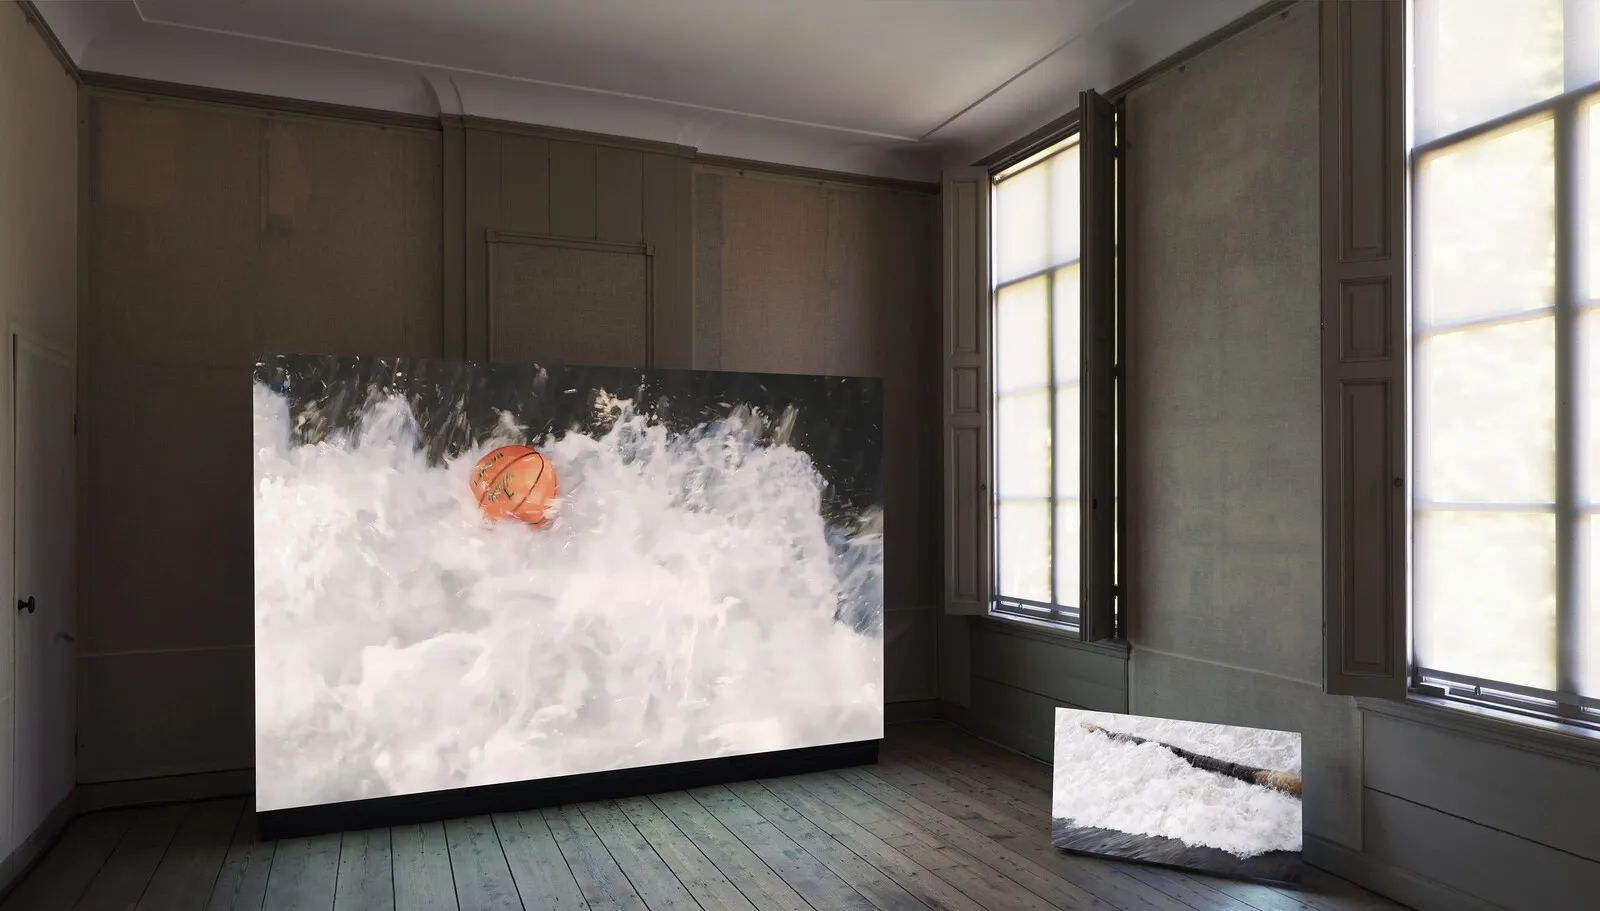 Groot scherm met een video van een basketbal die in een snelle waterstroom drijft, naast een kleiner scherm waarop hetzelfde water te zien is.